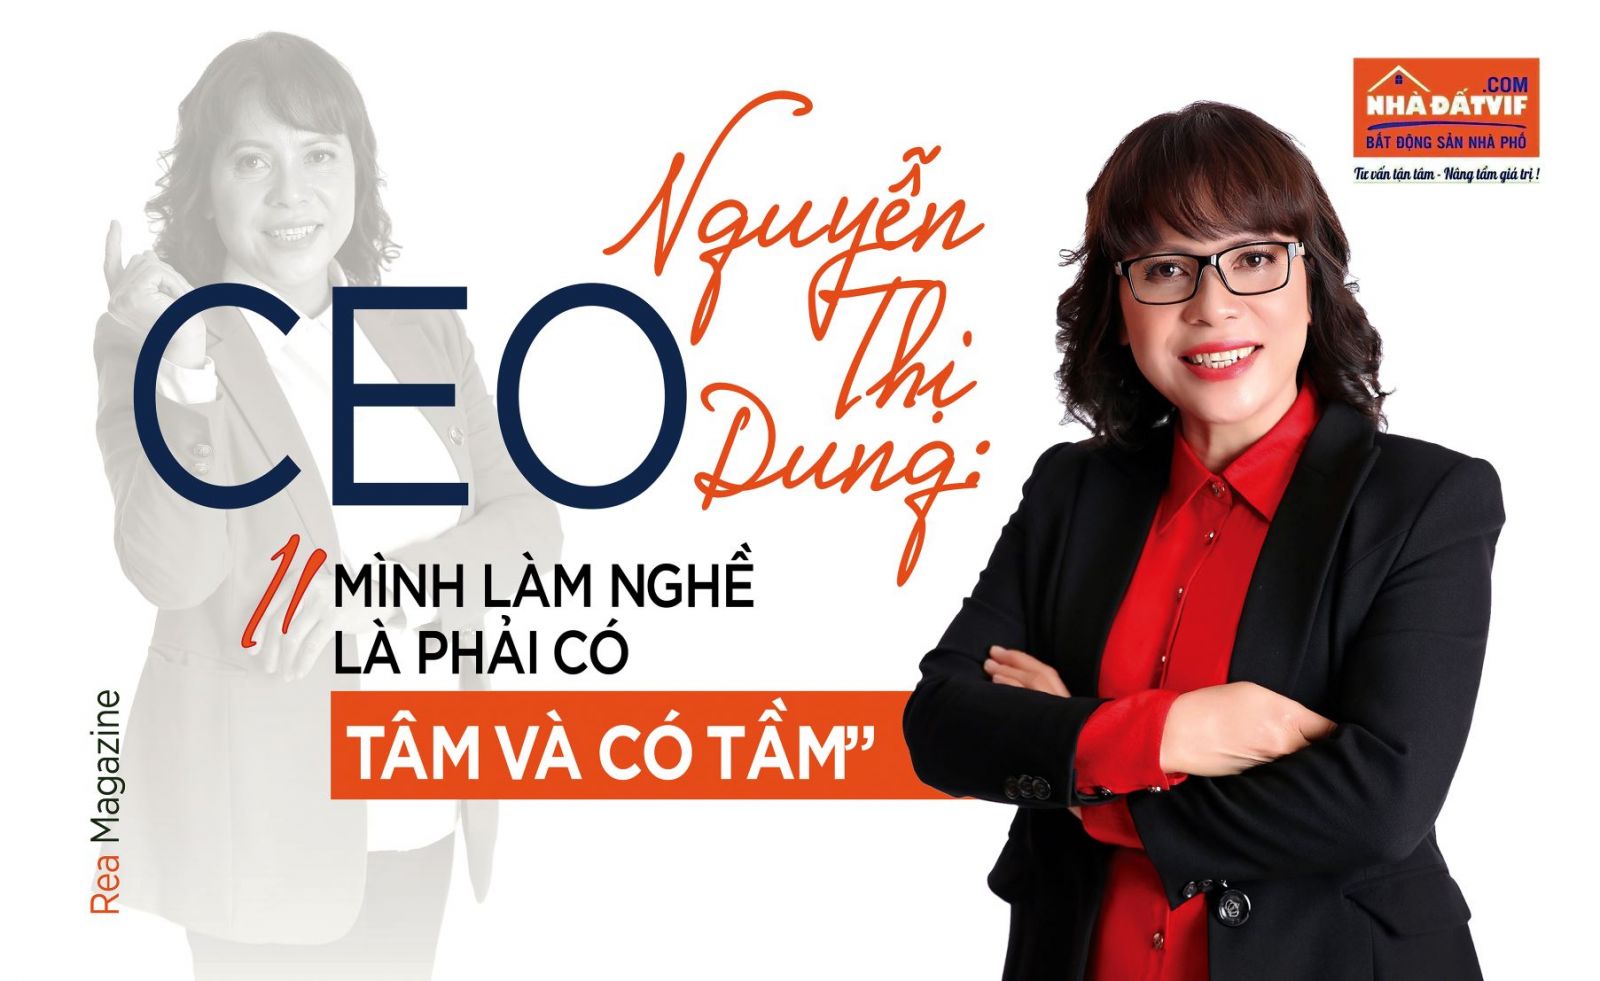 CEO Nguyễn Thị Dung: “Mình làm nghề là phải có tâm và có tầm”